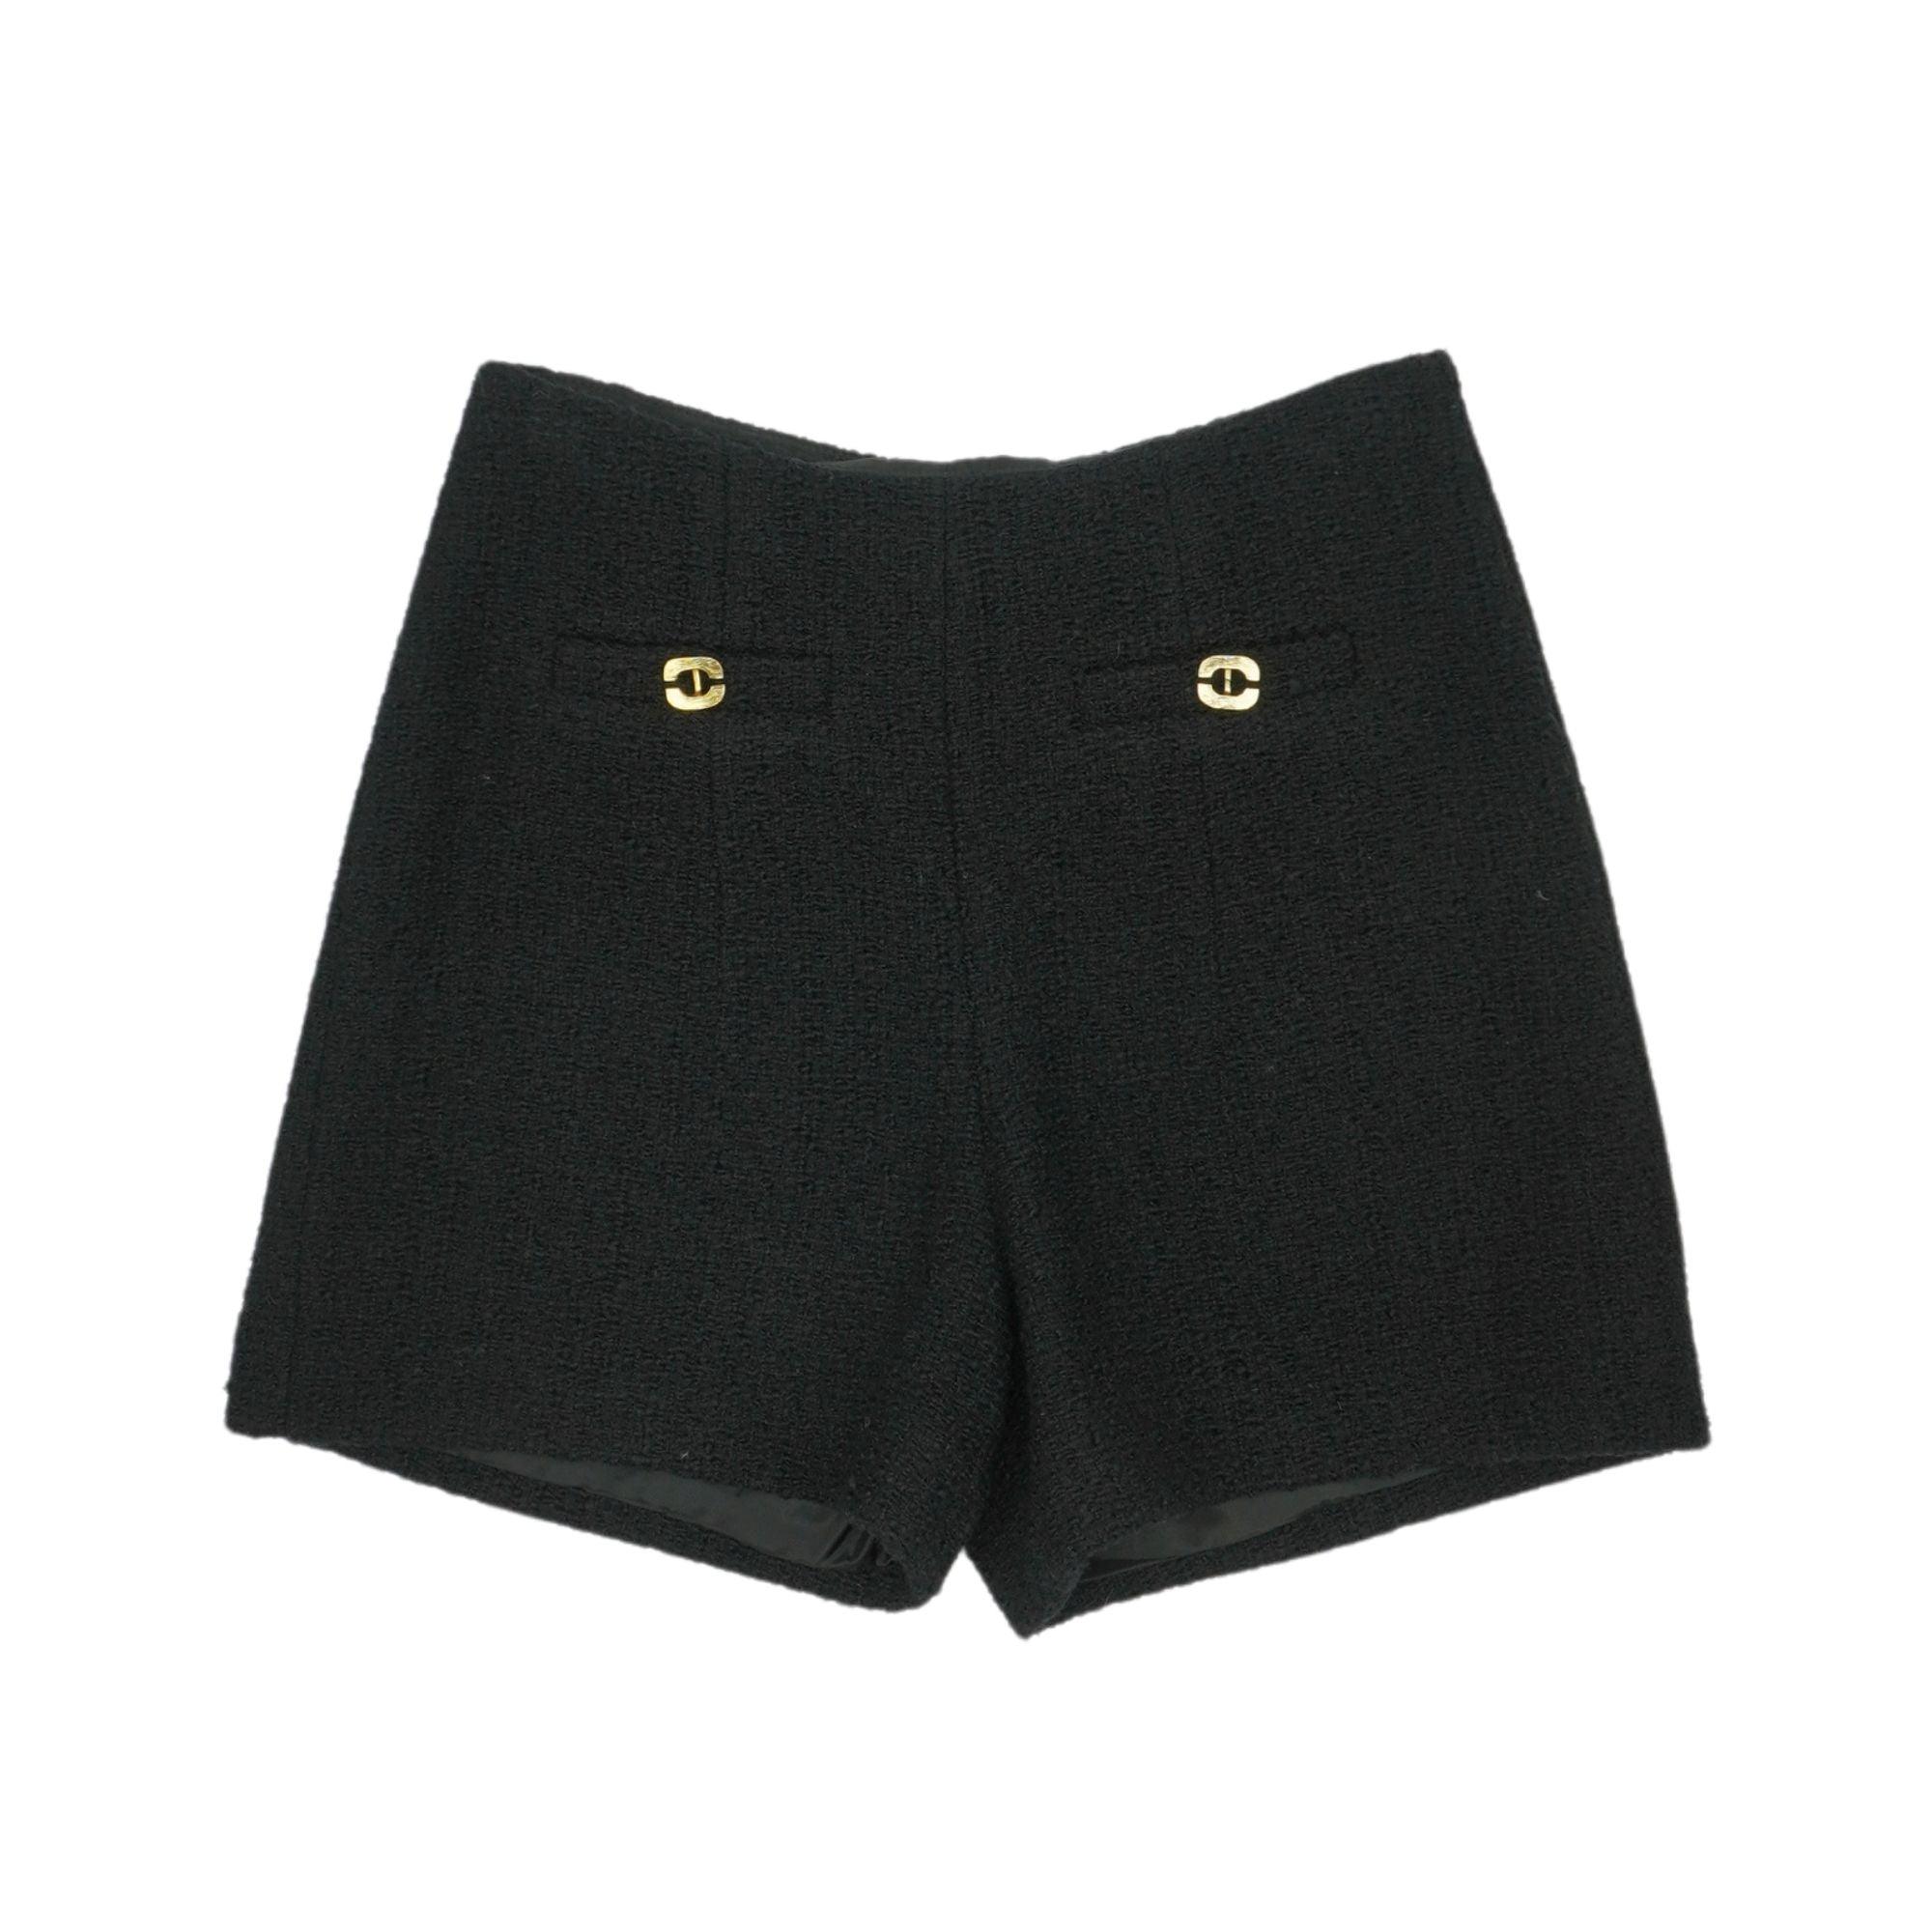 BA&SH 'Midos' Shorts - Women's 0 - Fashionably Yours